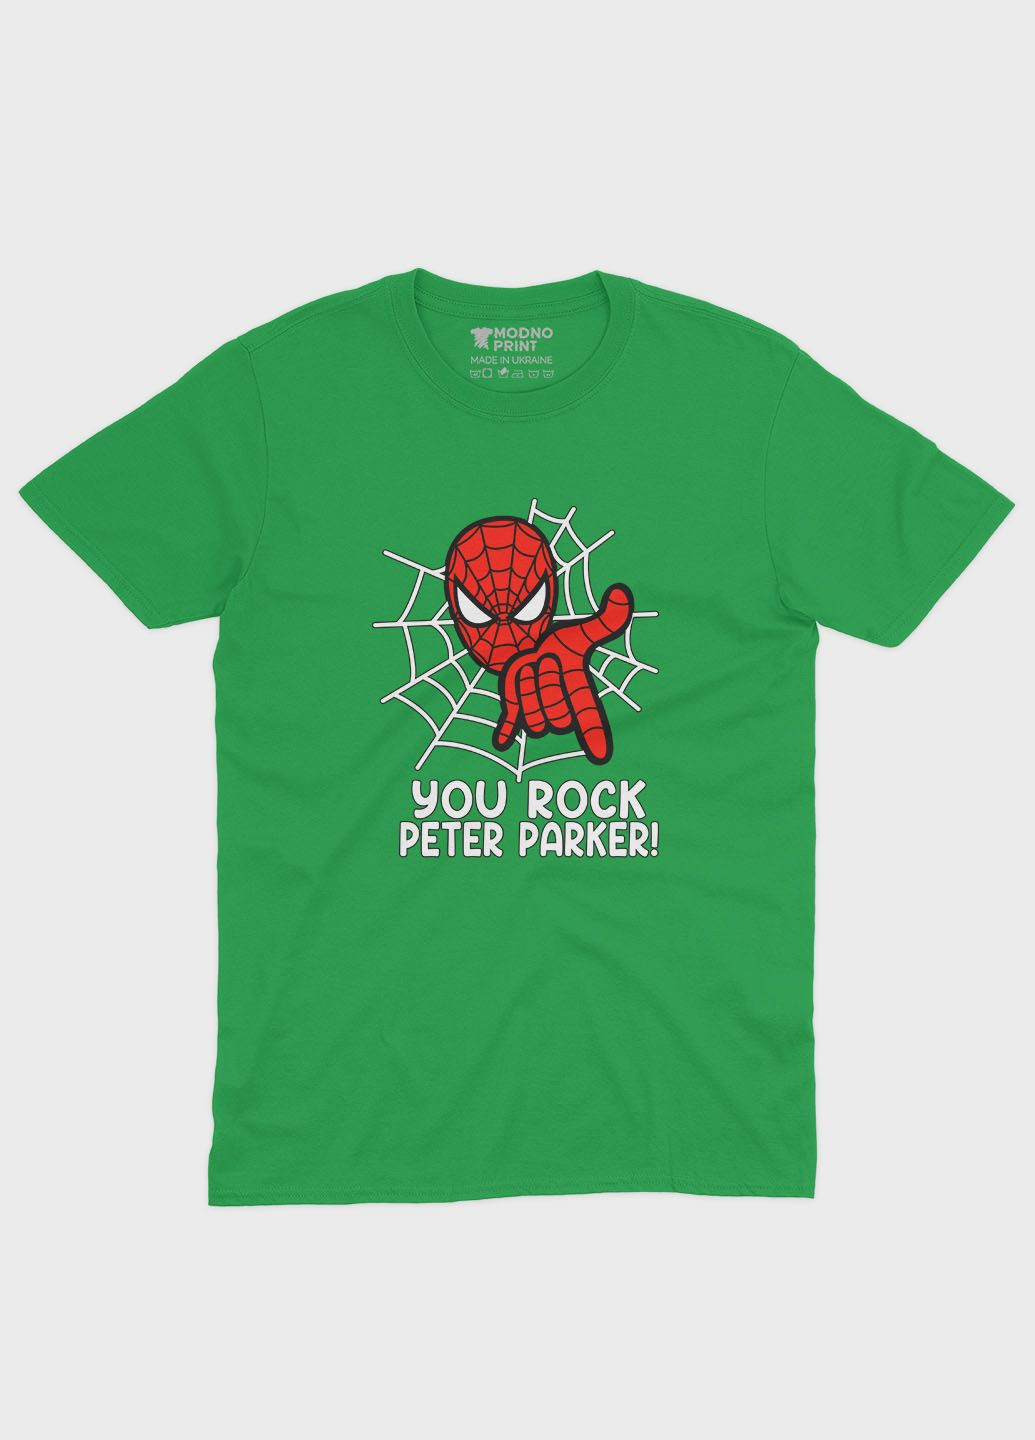 Зелена демісезонна футболка для дівчинки з принтом супергероя - людина-павук (ts001-1-keg-006-014-102-g) Modno